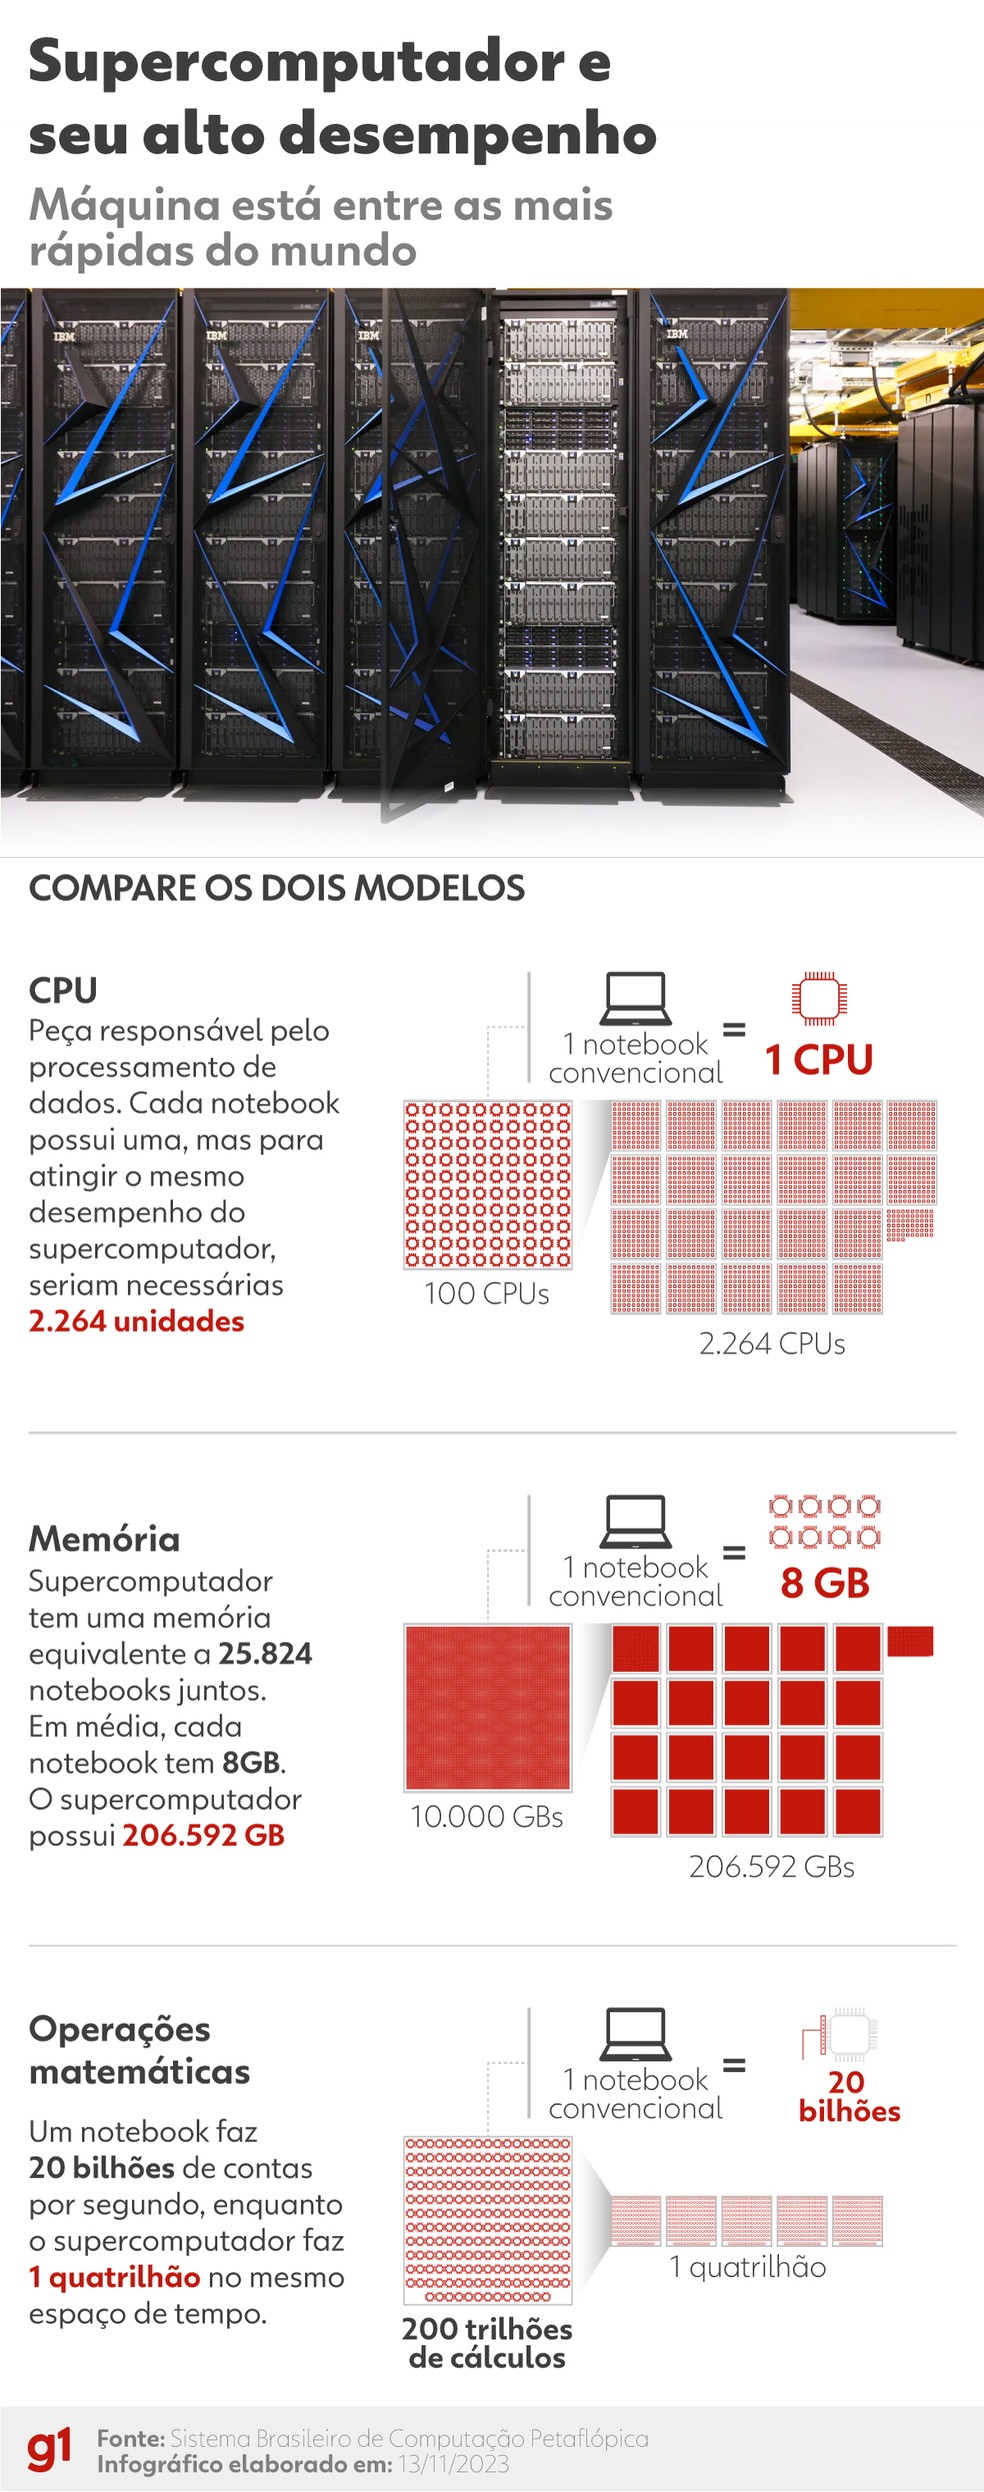 Comparação entre um notebook comum e o supercomputador. — Foto: Arte/g1